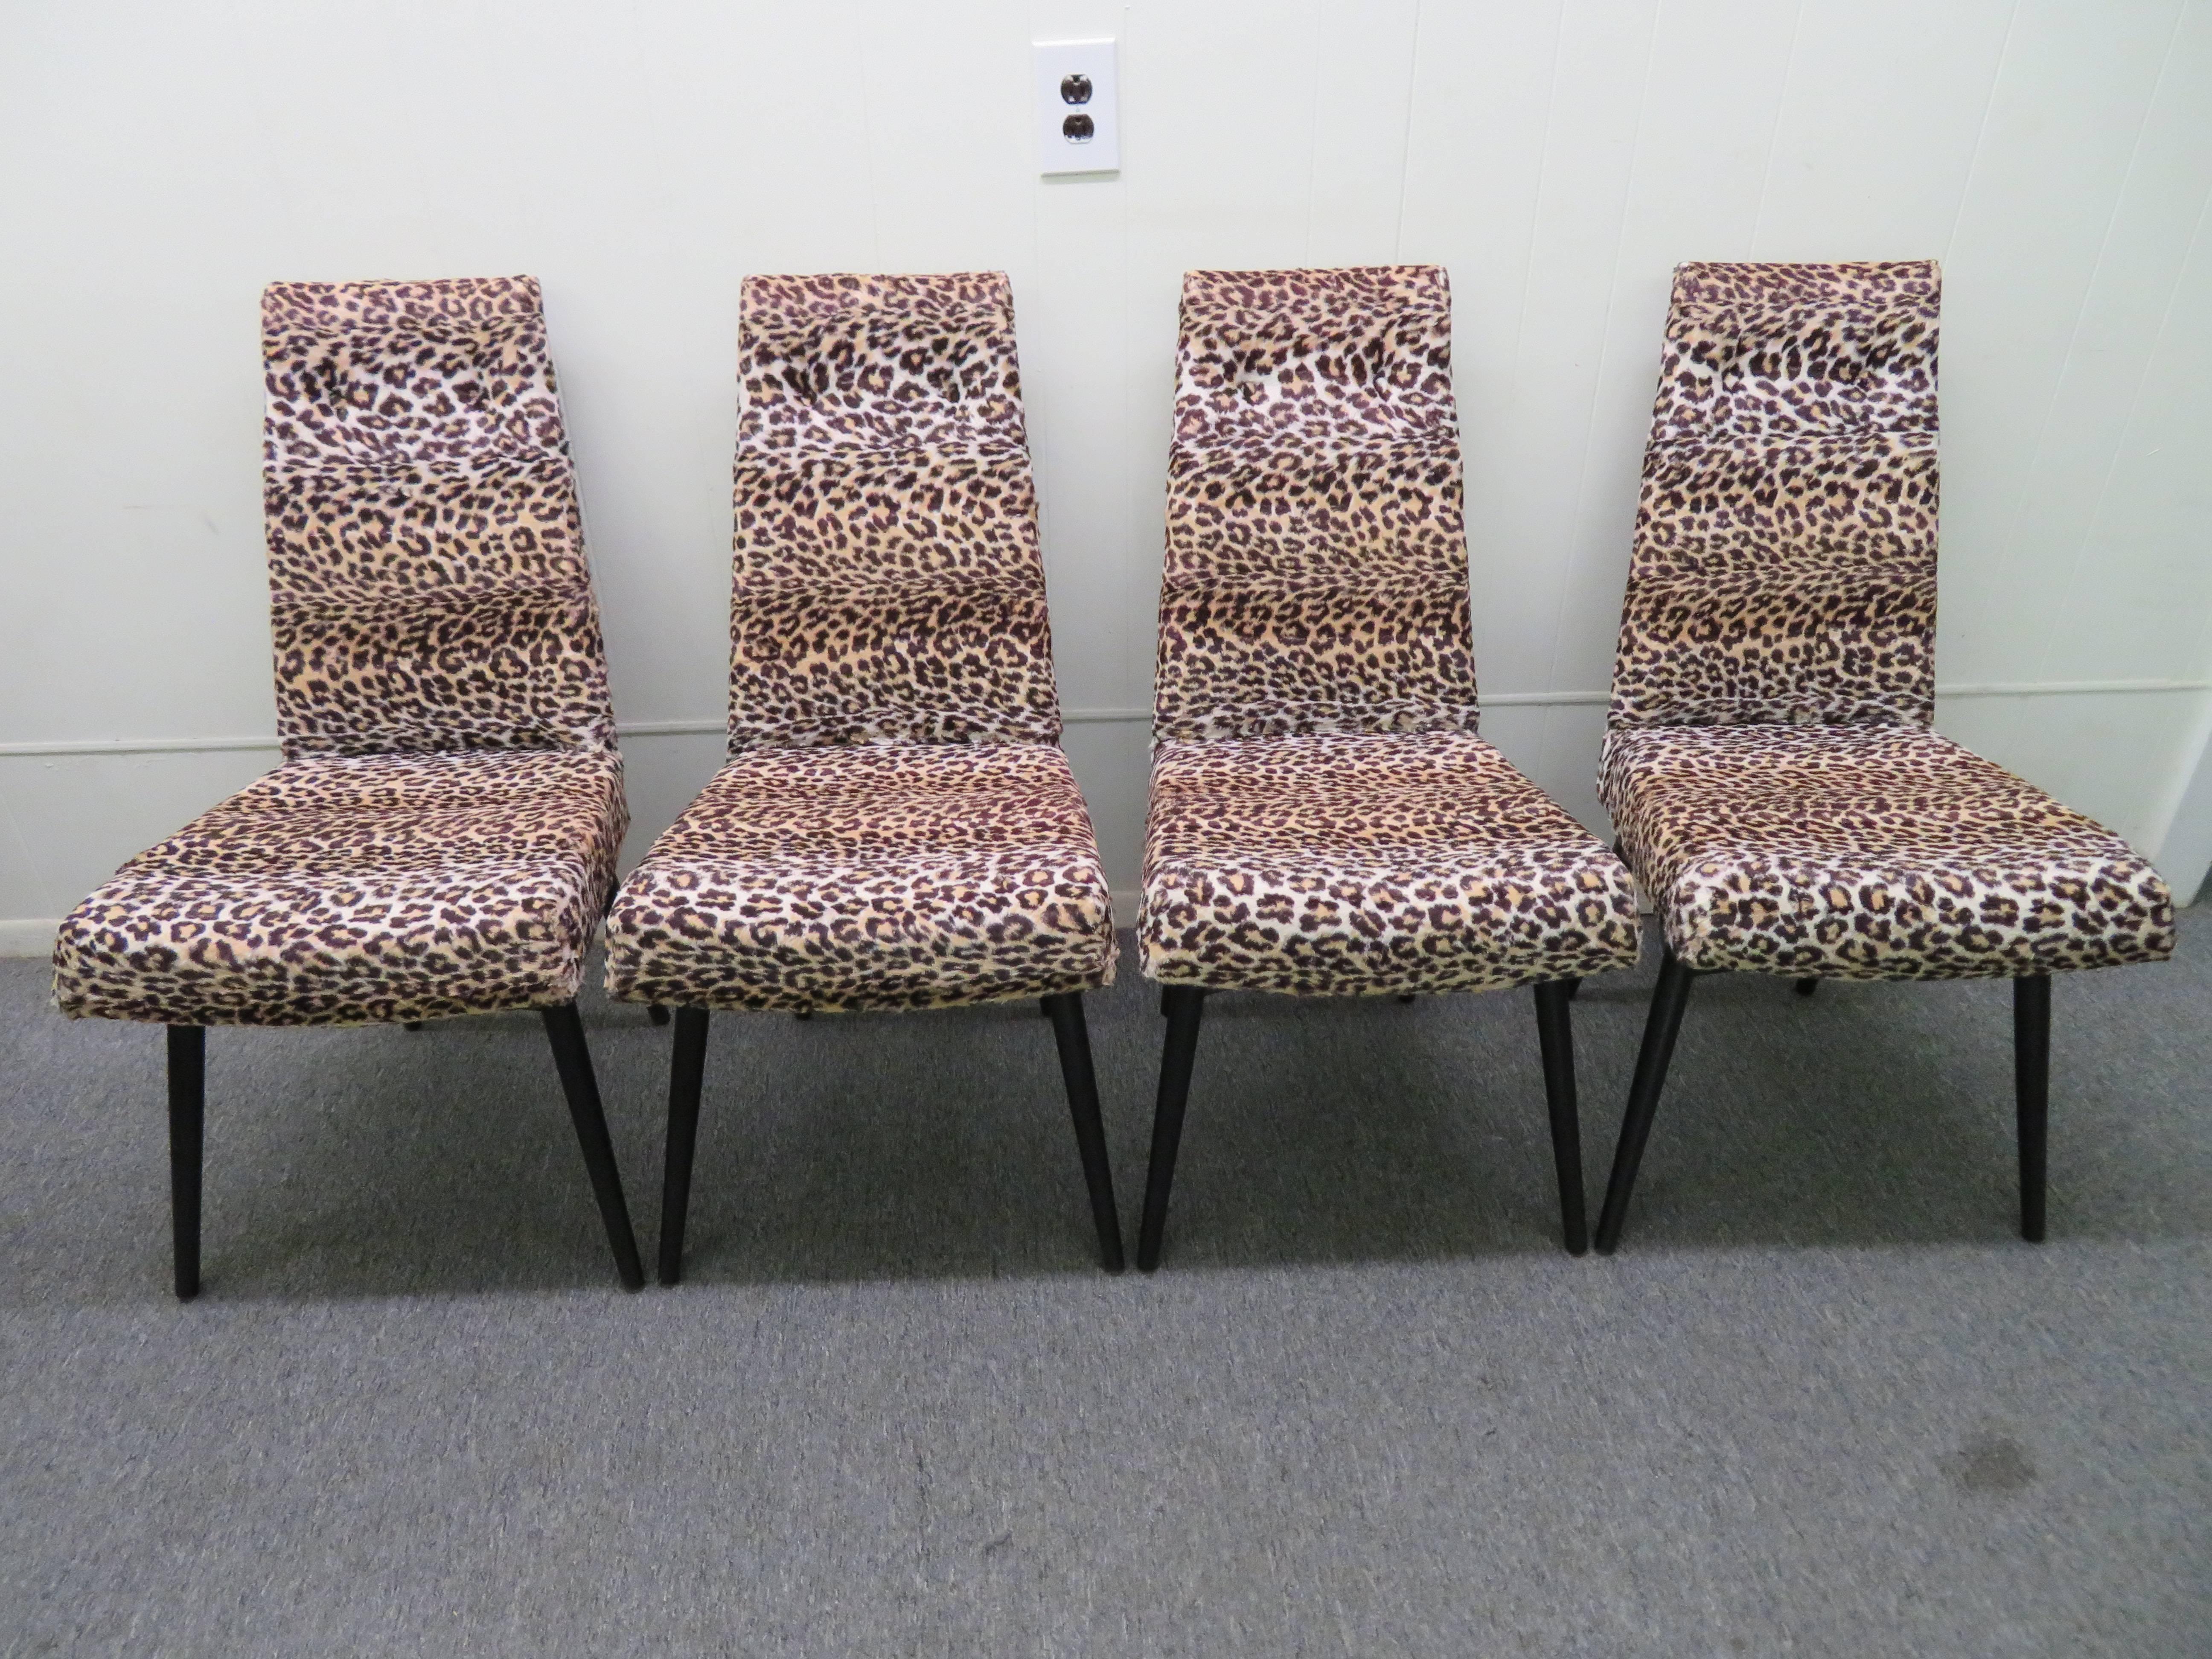 Atemberaubender Satz von vier Adrian Pearsall Esszimmerstühlen, schwarz lackiert. Diese Stühle behalten ihre ursprüngliche schwarz lackierte Oberfläche in sehr schönem Zustand - eine sehr seltene Farbe. Auch das weiße Leopardenimitat ist Vintage und